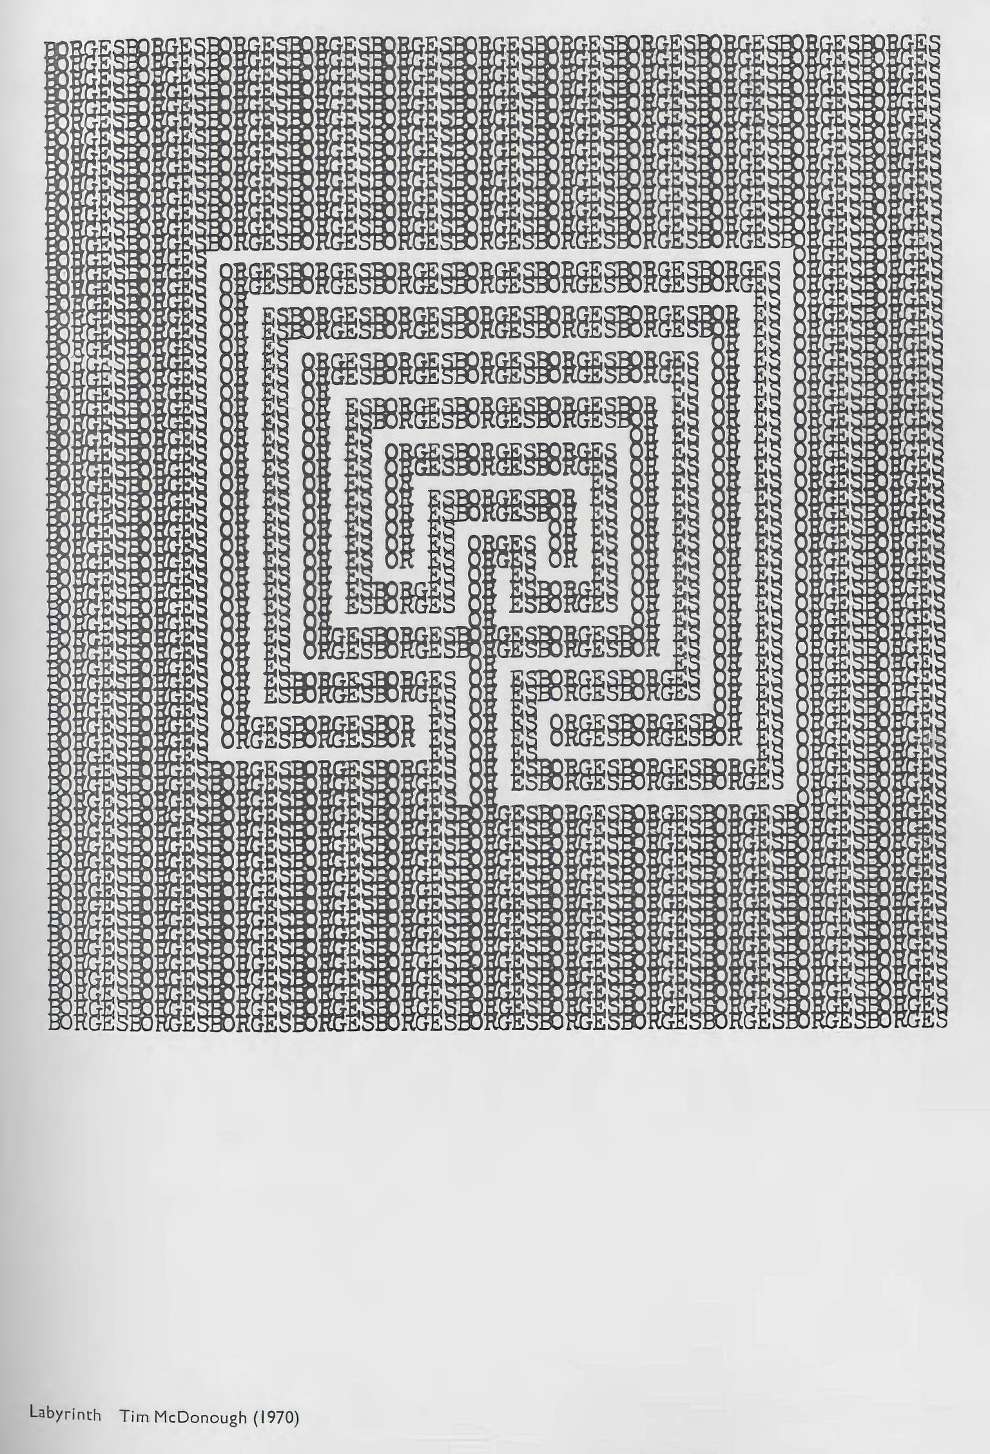 Riddell Alan Ed Typewriter Art Page 62 Image 0001 768x1128 